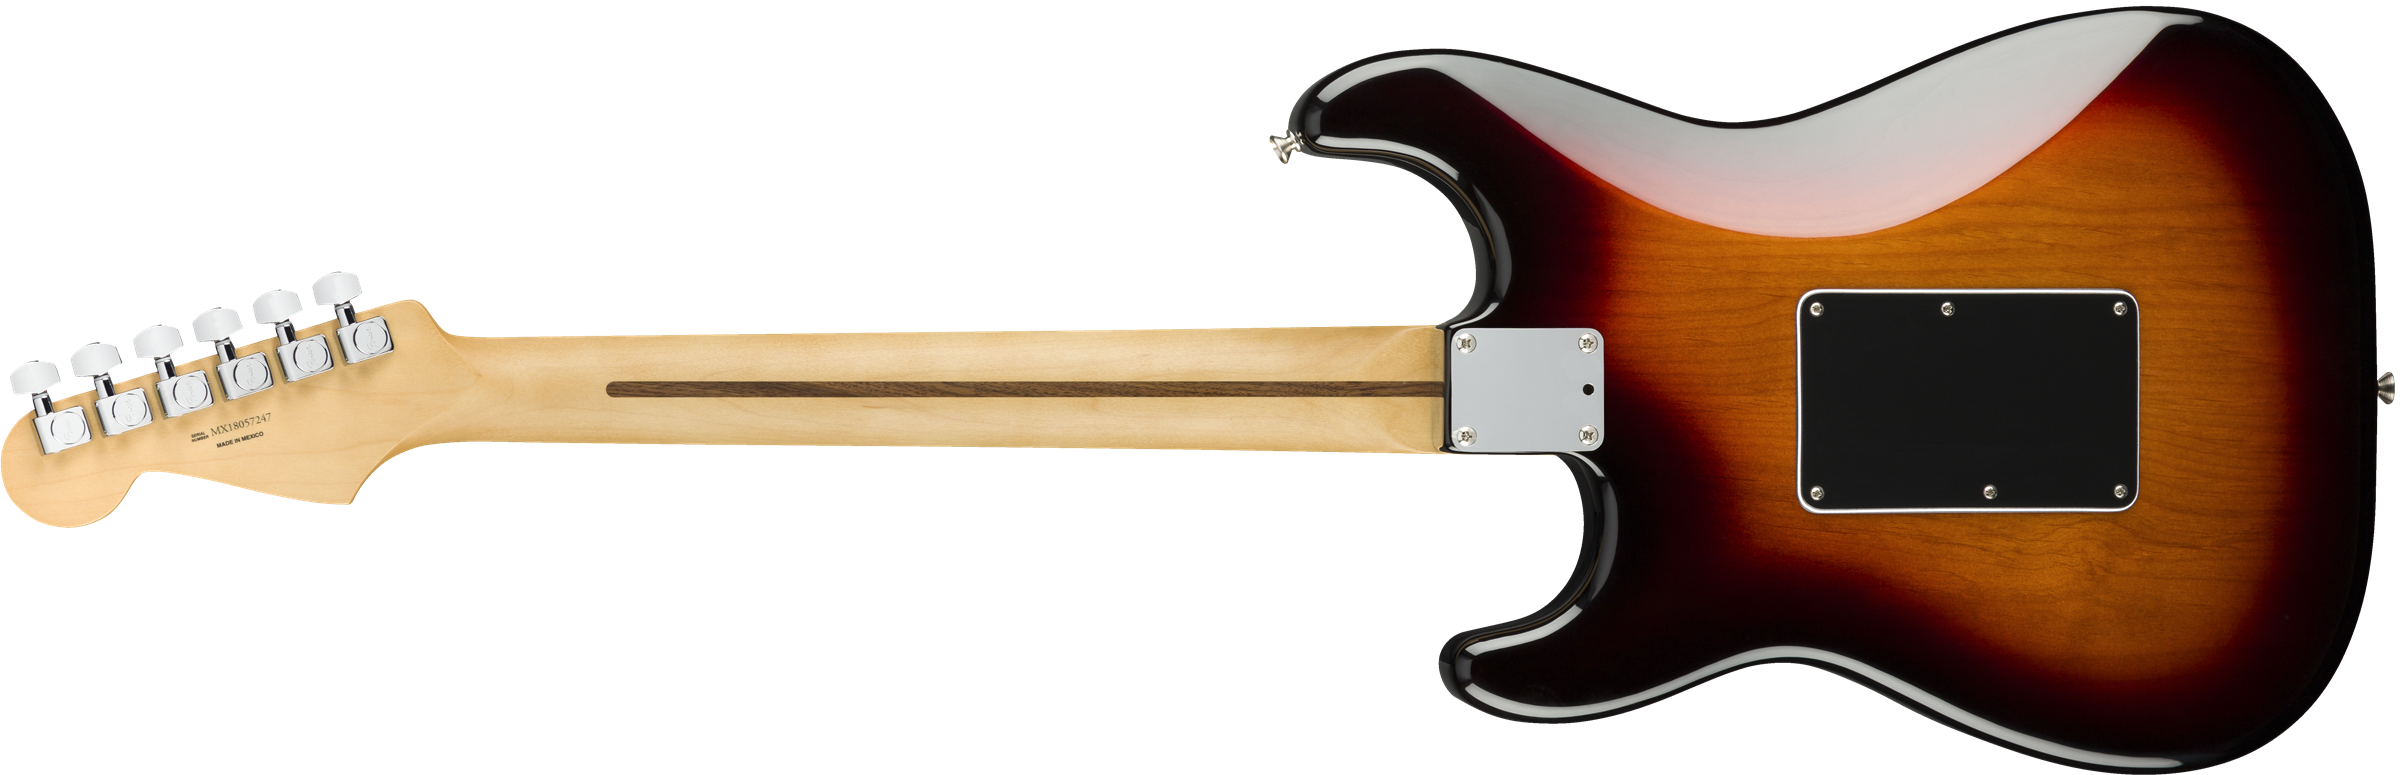 Fender Strat Player Floyd Rose Mex Hss Fr Pf - 3-color Sunburst - Str shape electric guitar - Variation 1